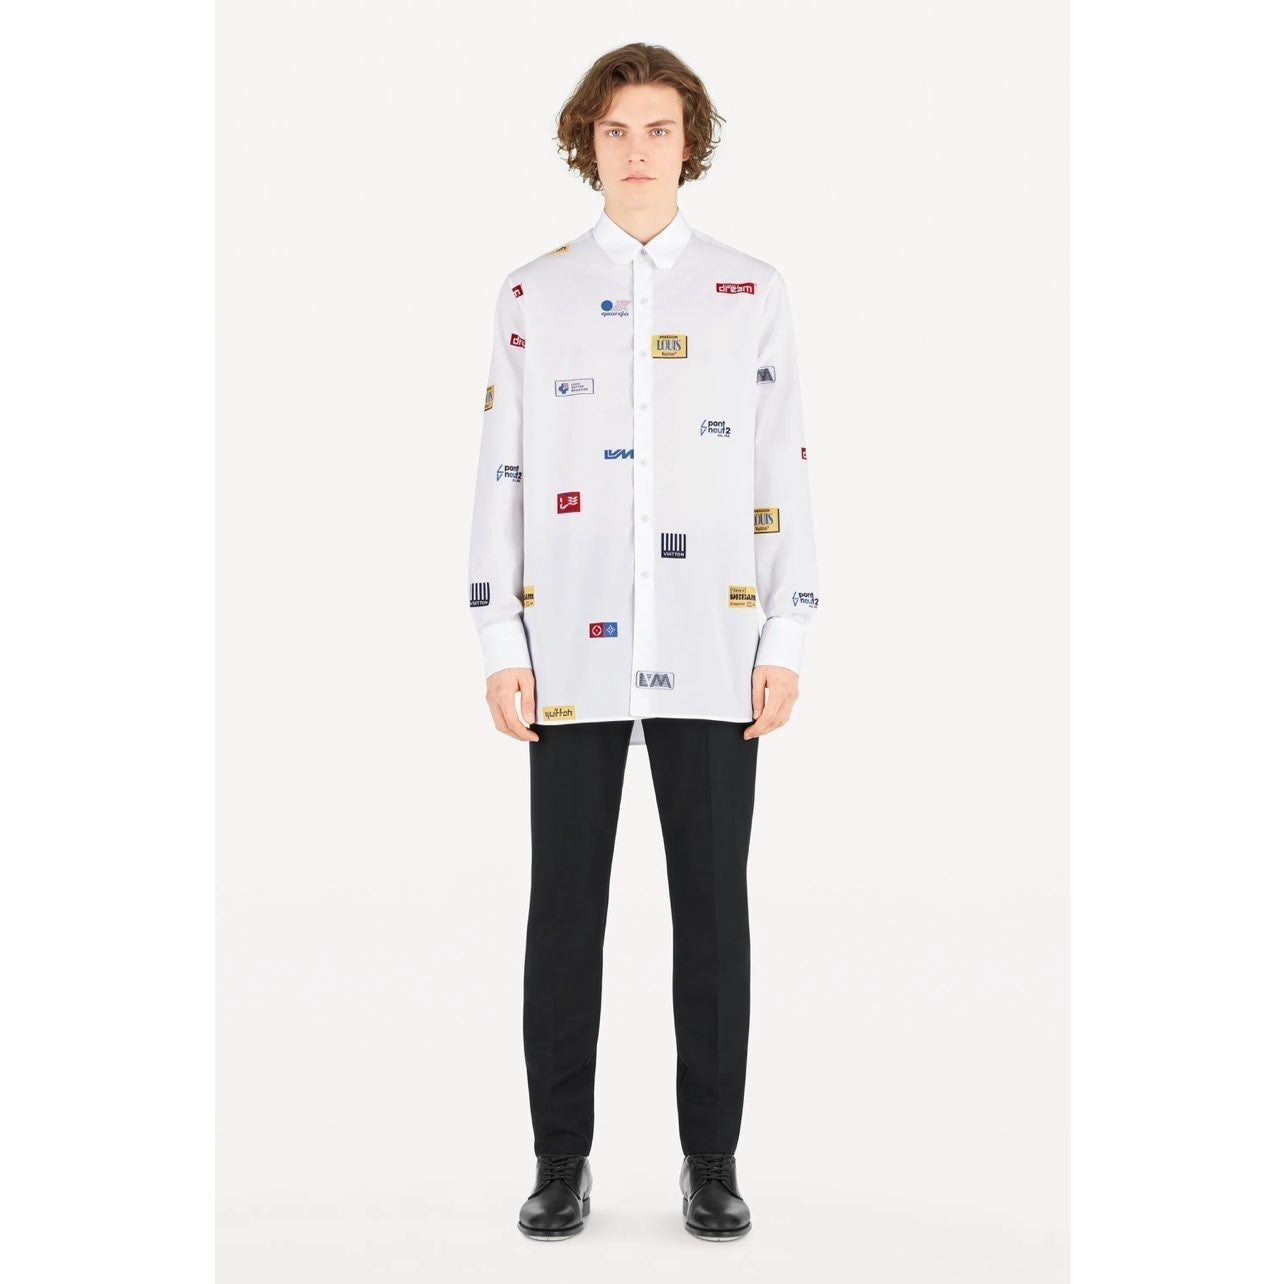 Men’s Louis Vuitton DNA Uniforms Button Down Solid Black Shirt Size 36